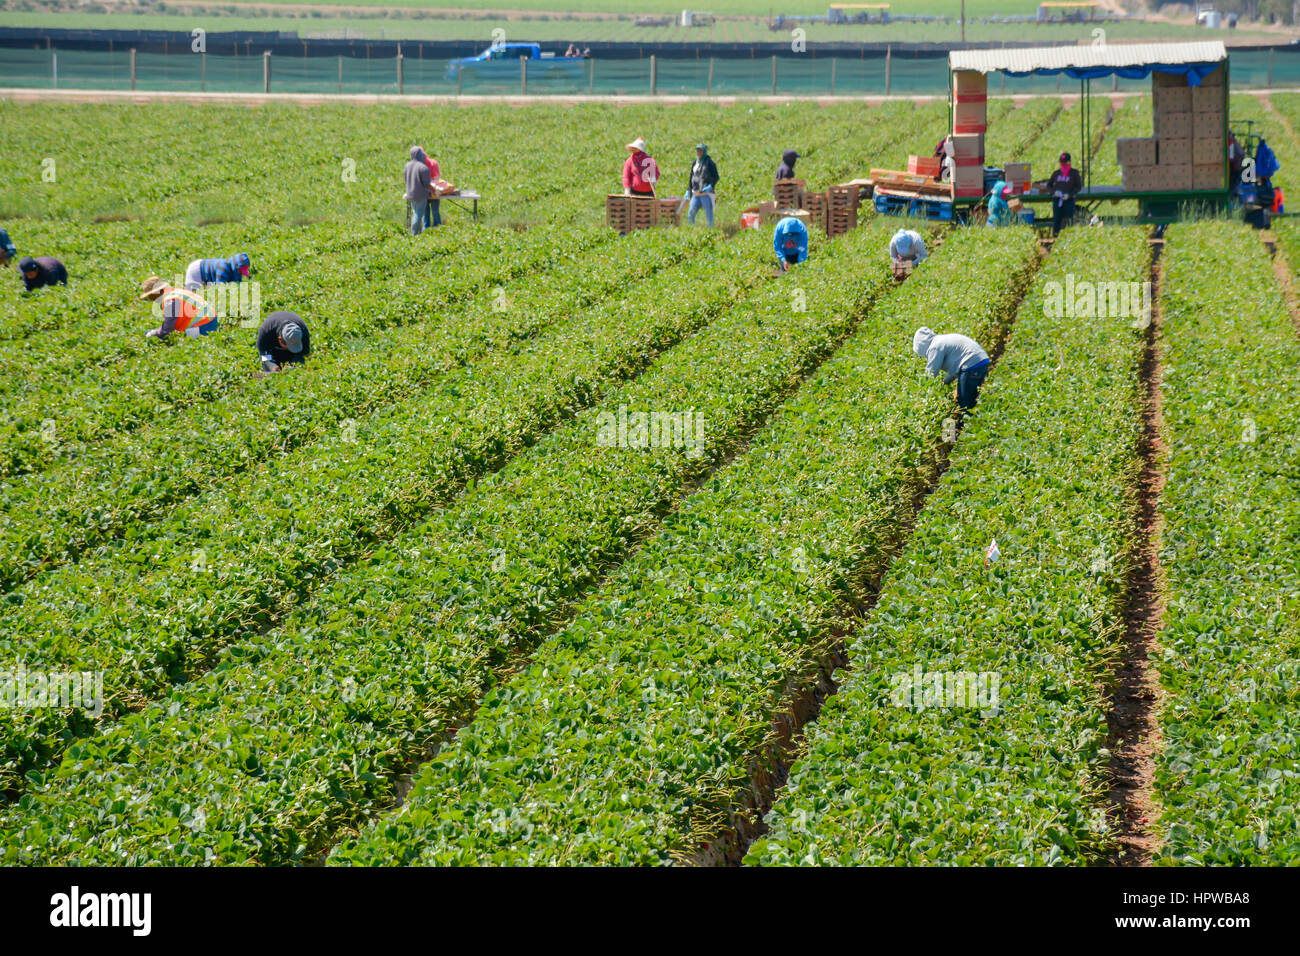 Mexikanische Einwanderer Landarbeiter, meist ohne Papiere illegalen arbeiten in die Erdbeerfelder Ernten in Kalifornien Stockfoto